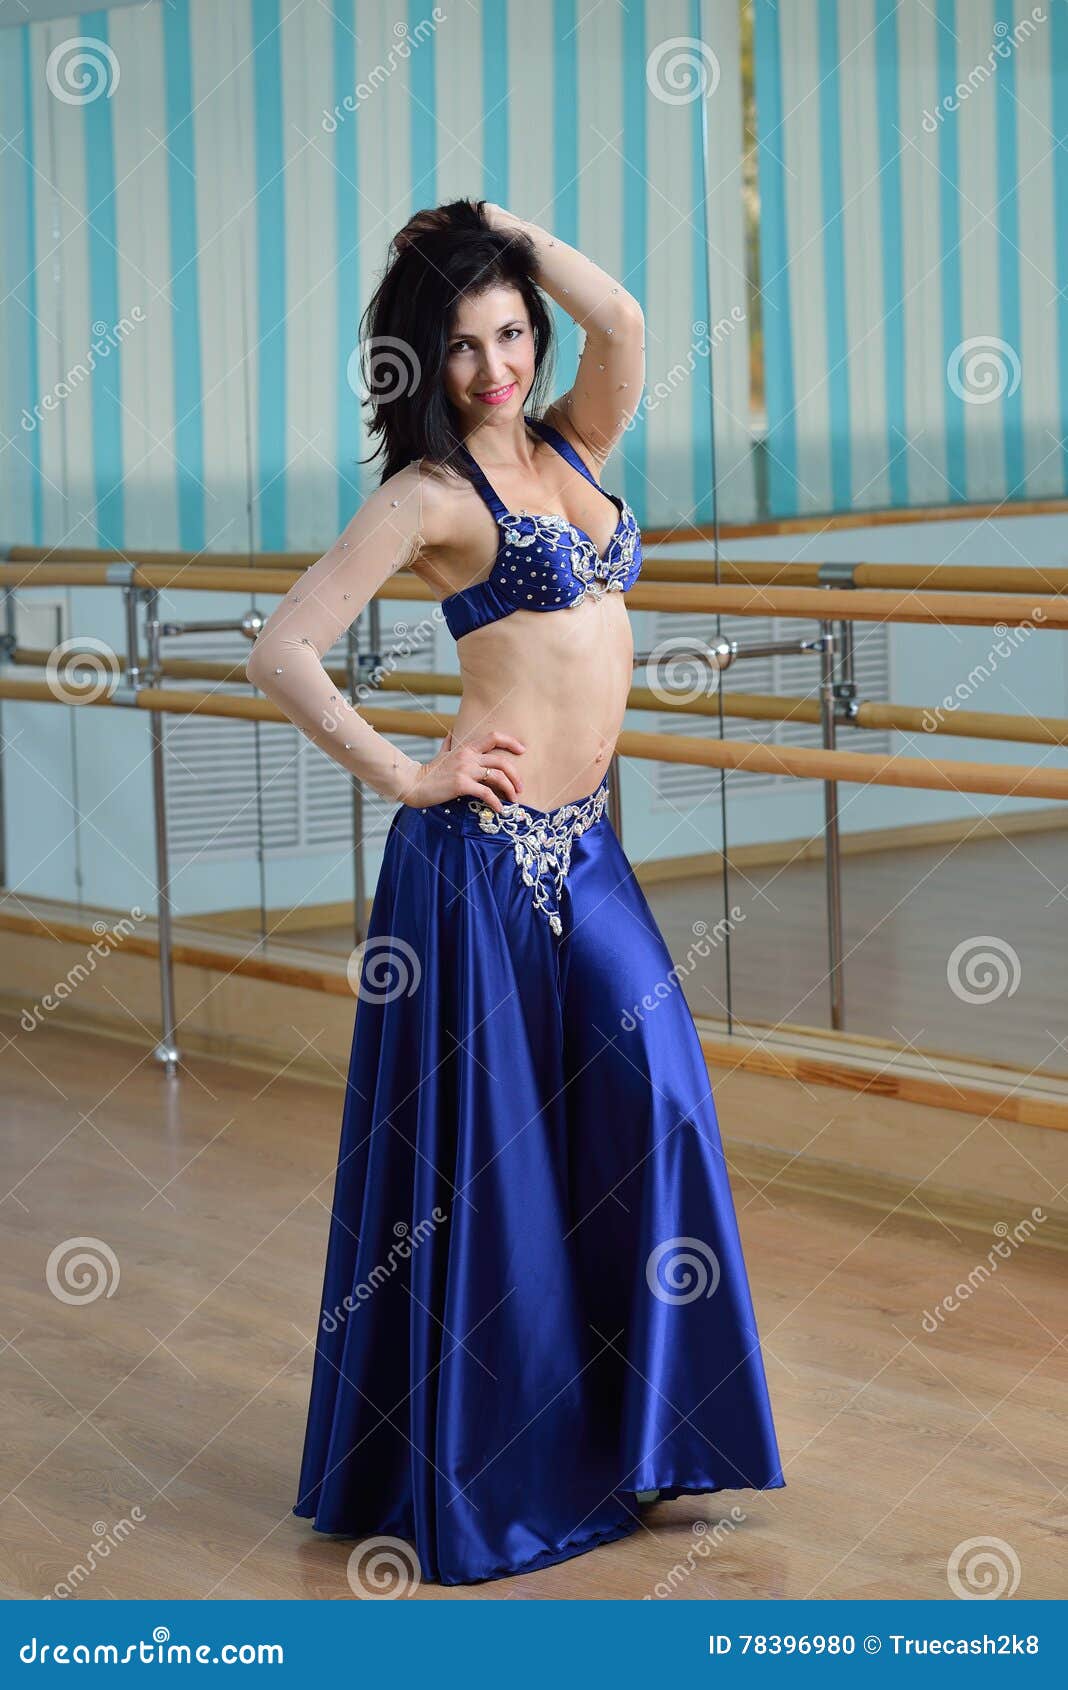 https://thumbs.dreamstime.com/z/jeune-belle-danseuse-du-ventre-sexy-dans-le-costume-arabe-danse-orientale-78396980.jpg